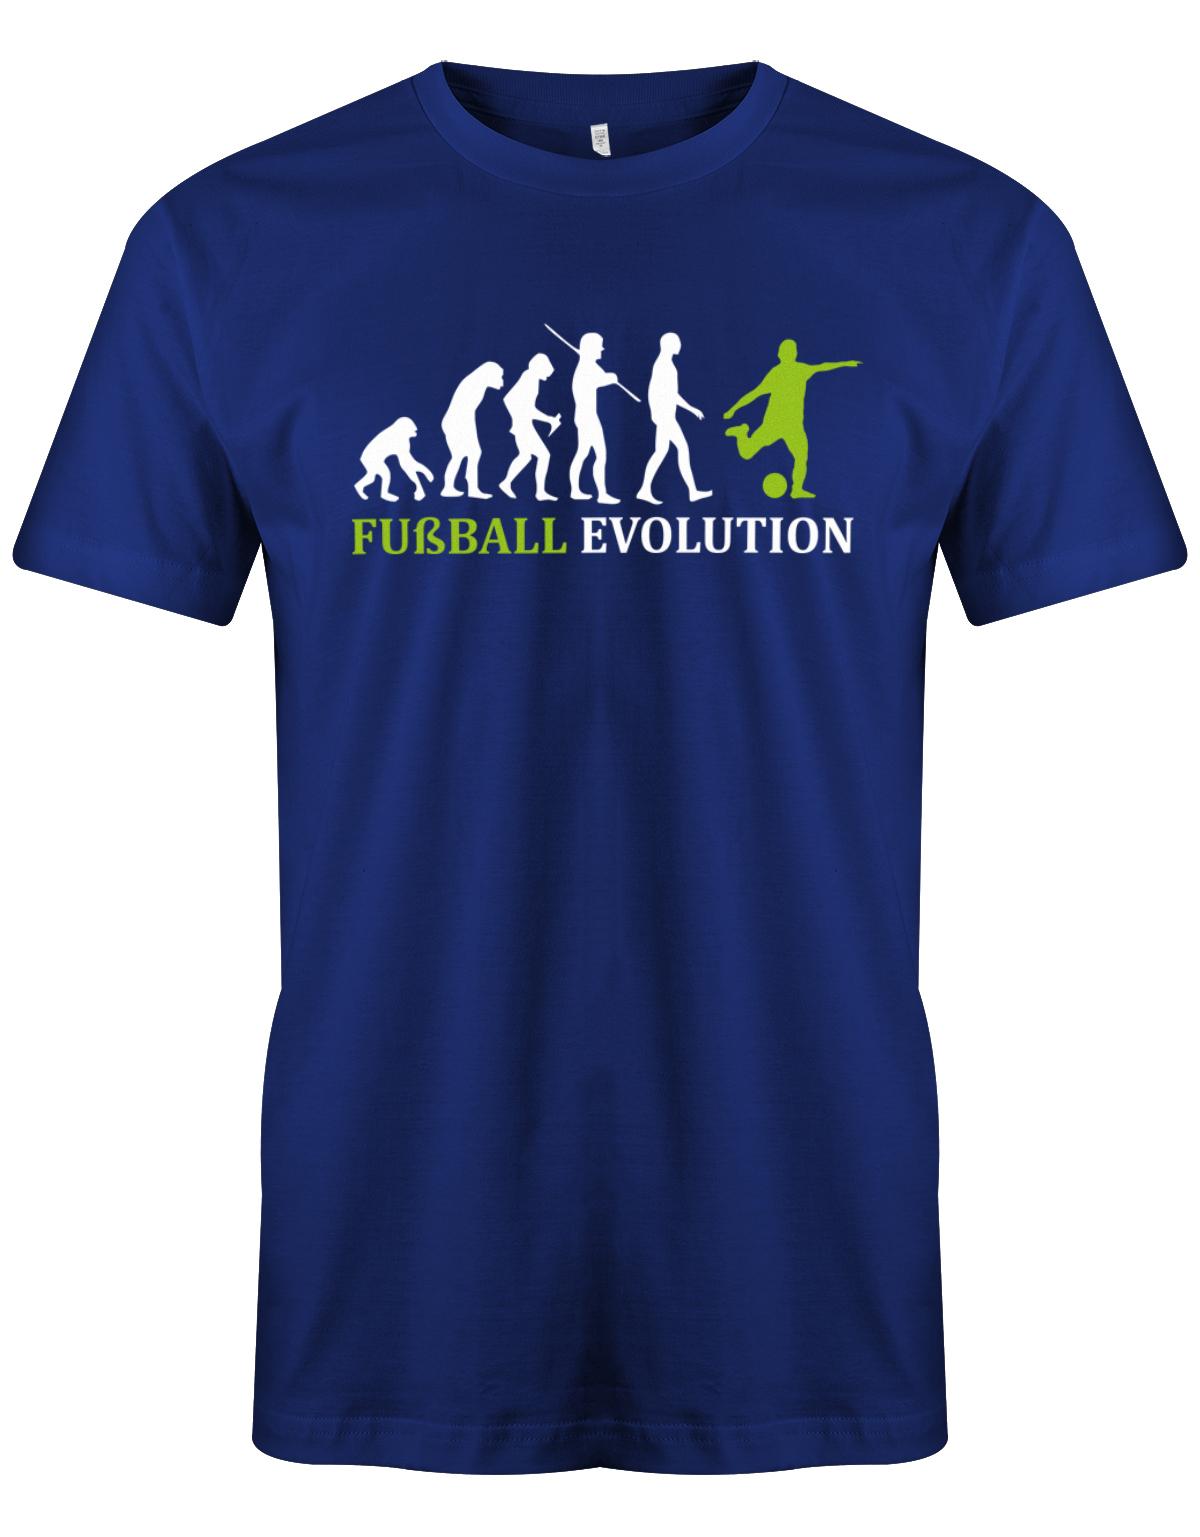 Fussball-Evolution-Herren-Shirt-Royalblau-Gr-n